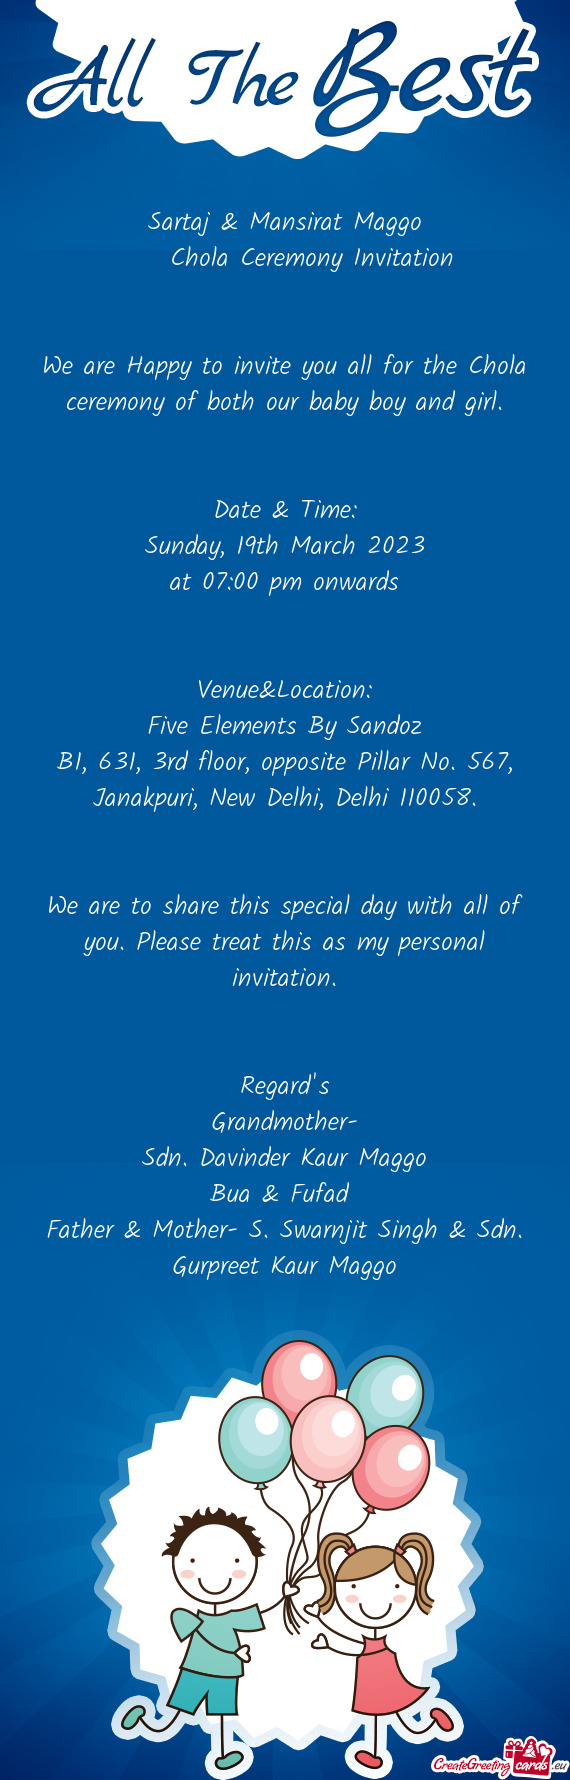 B1, 631, 3rd floor, opposite Pillar No. 567, Janakpuri, New Delhi, Delhi 110058